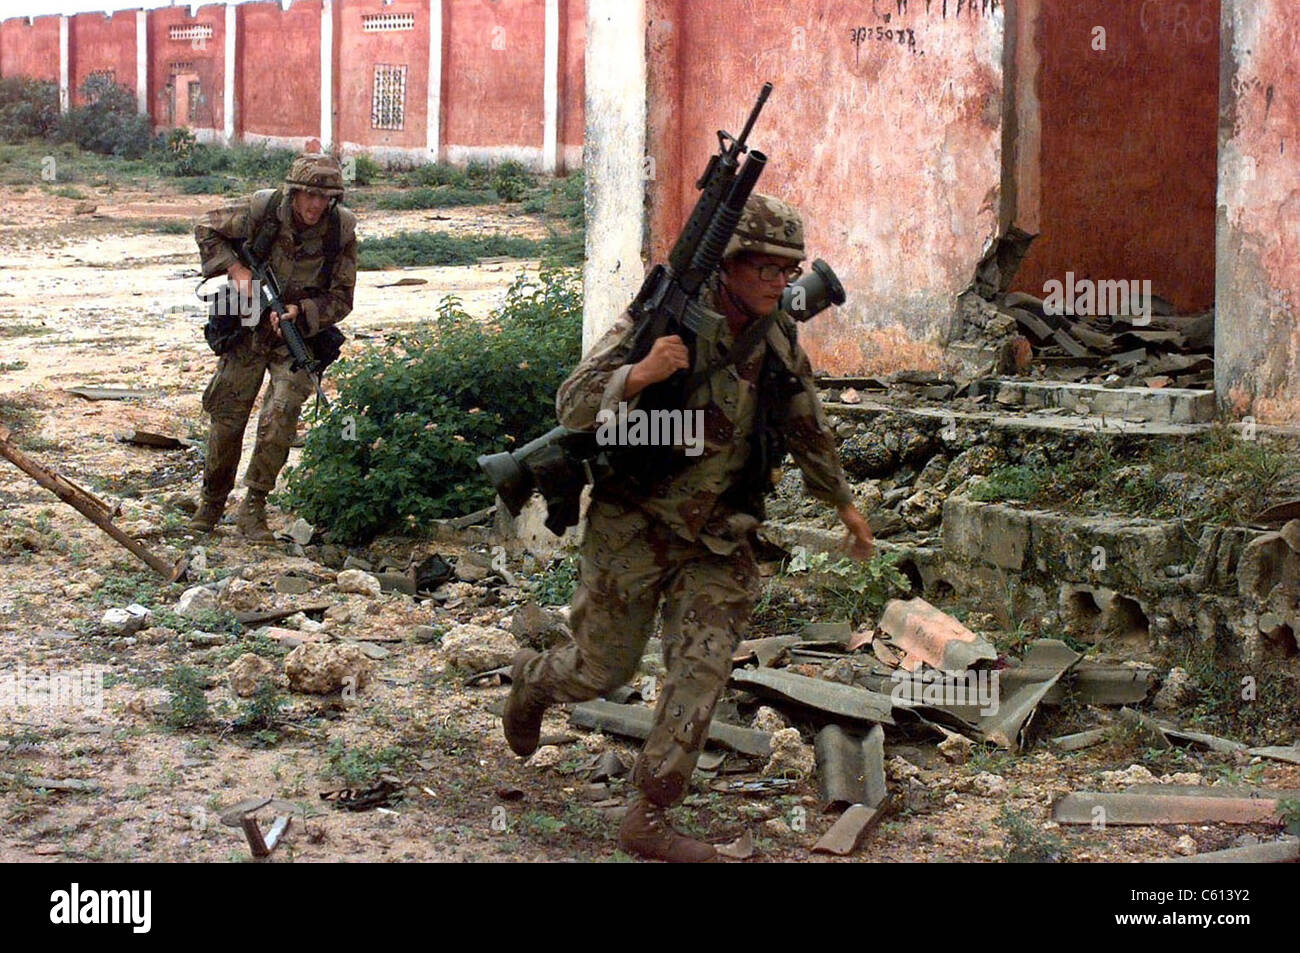 Marines corriendo de francotiradores en Mogadishu, Somalia durante la agitada intervención humanitaria de la ONU. El 7 de enero de 1992. (BSLOC 2011 3 30) Foto de stock